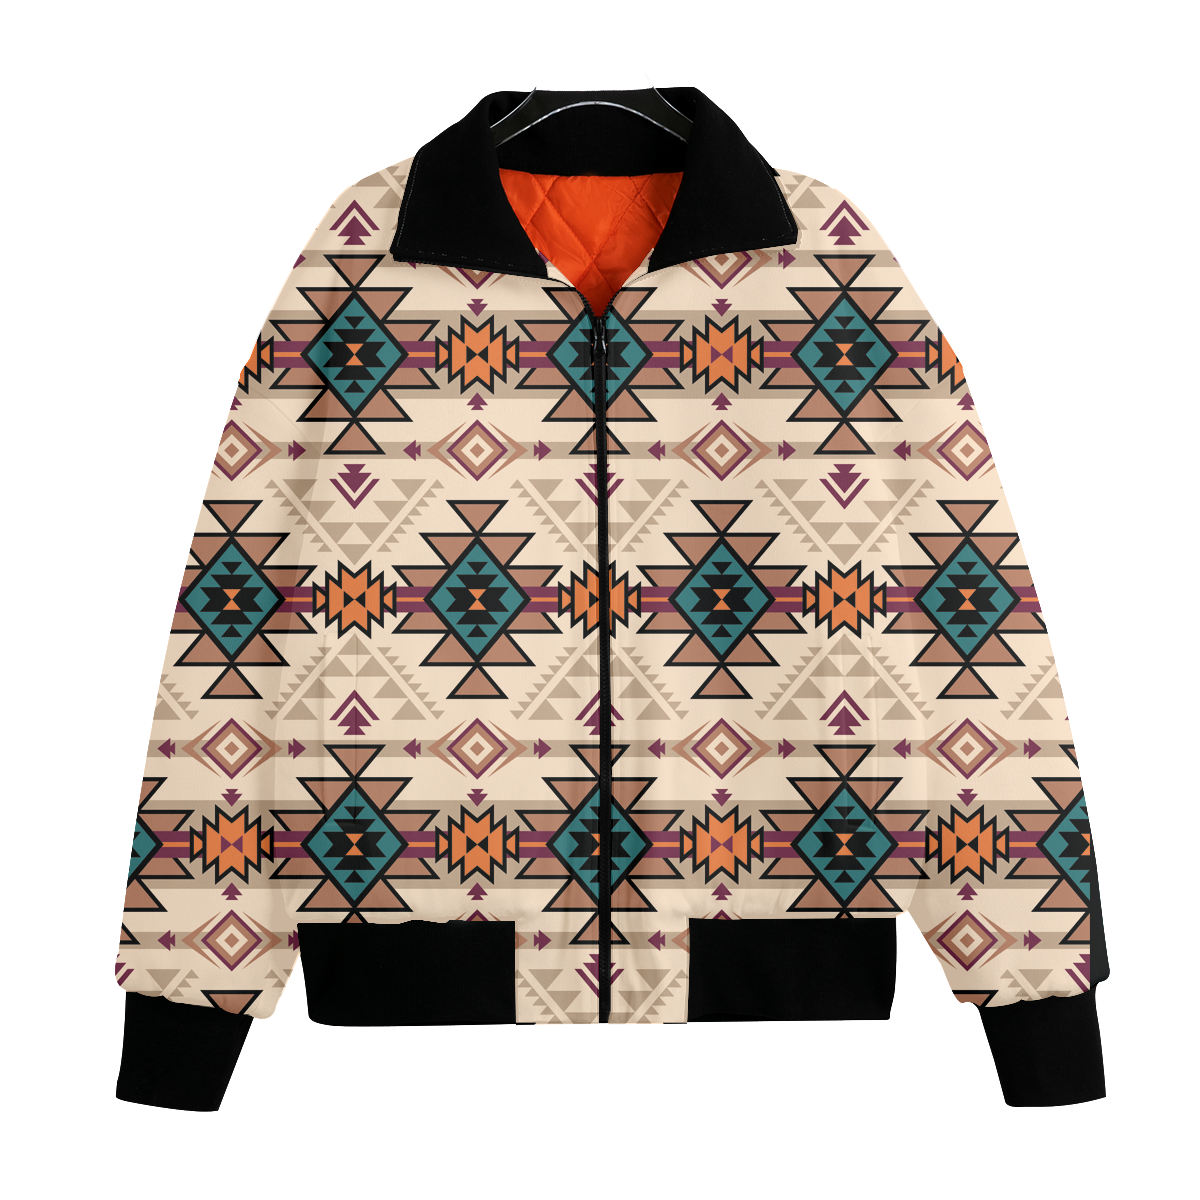 Powwow StoreGBNAT00622 Pattern Native American Unisex Knitted Fleece Lapel Outwear